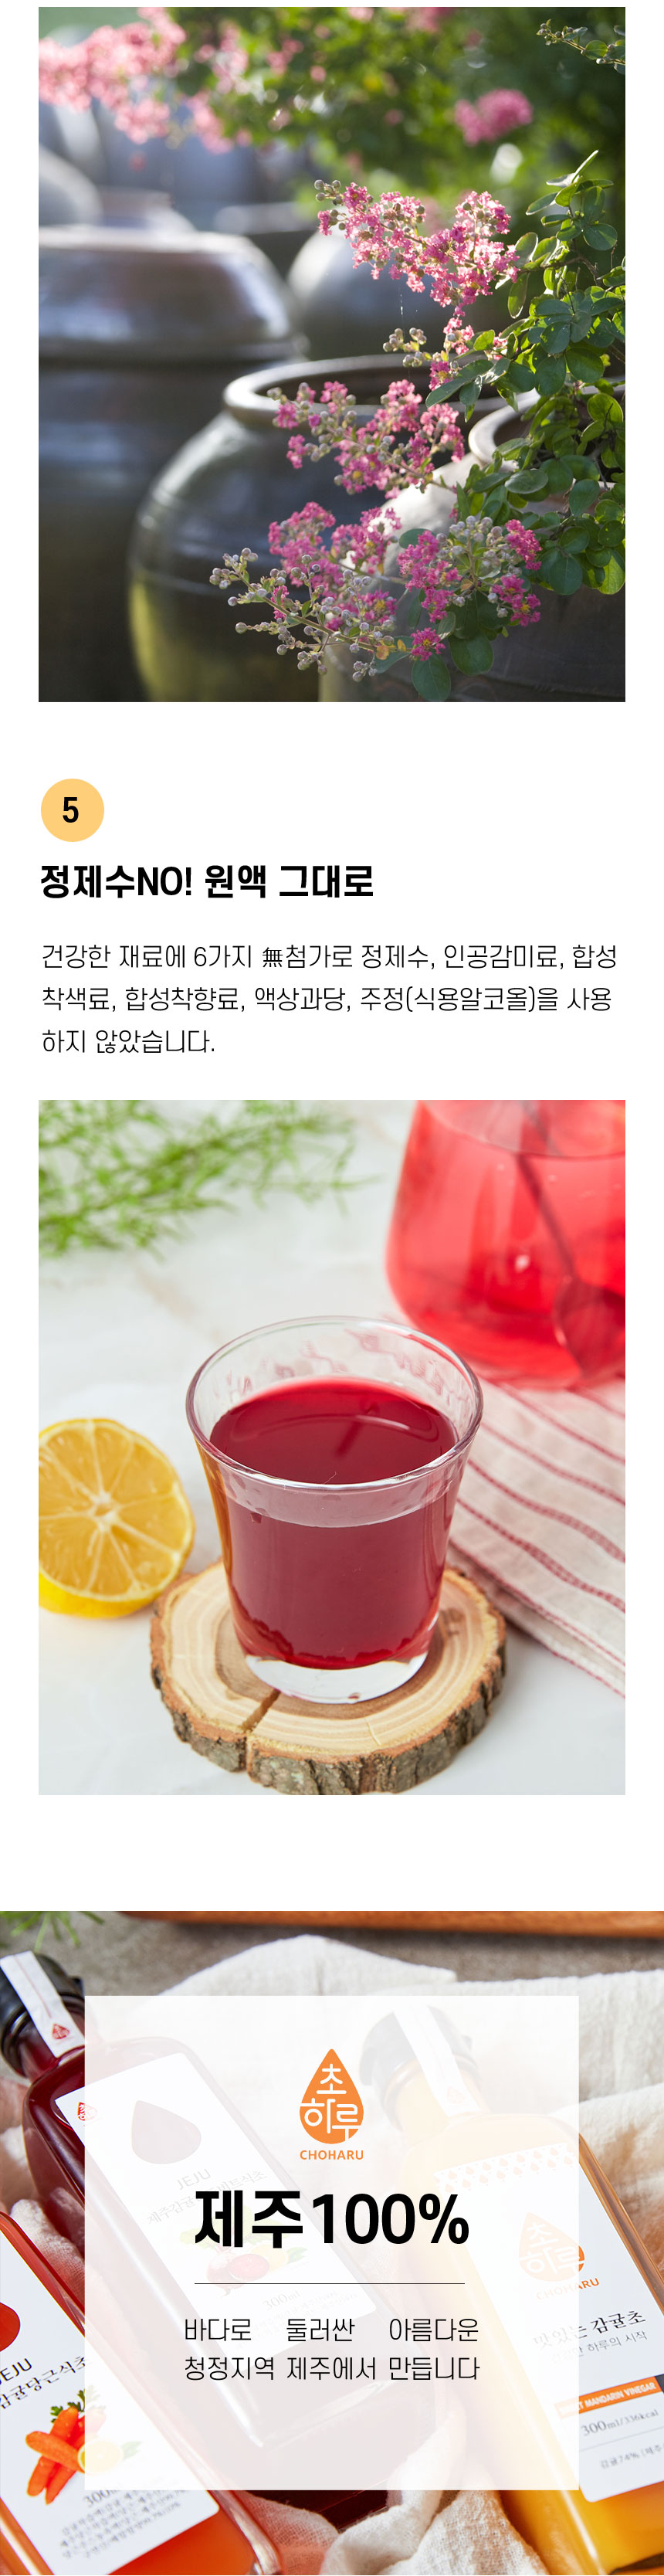 초하루 제주 천연발효식초 상세